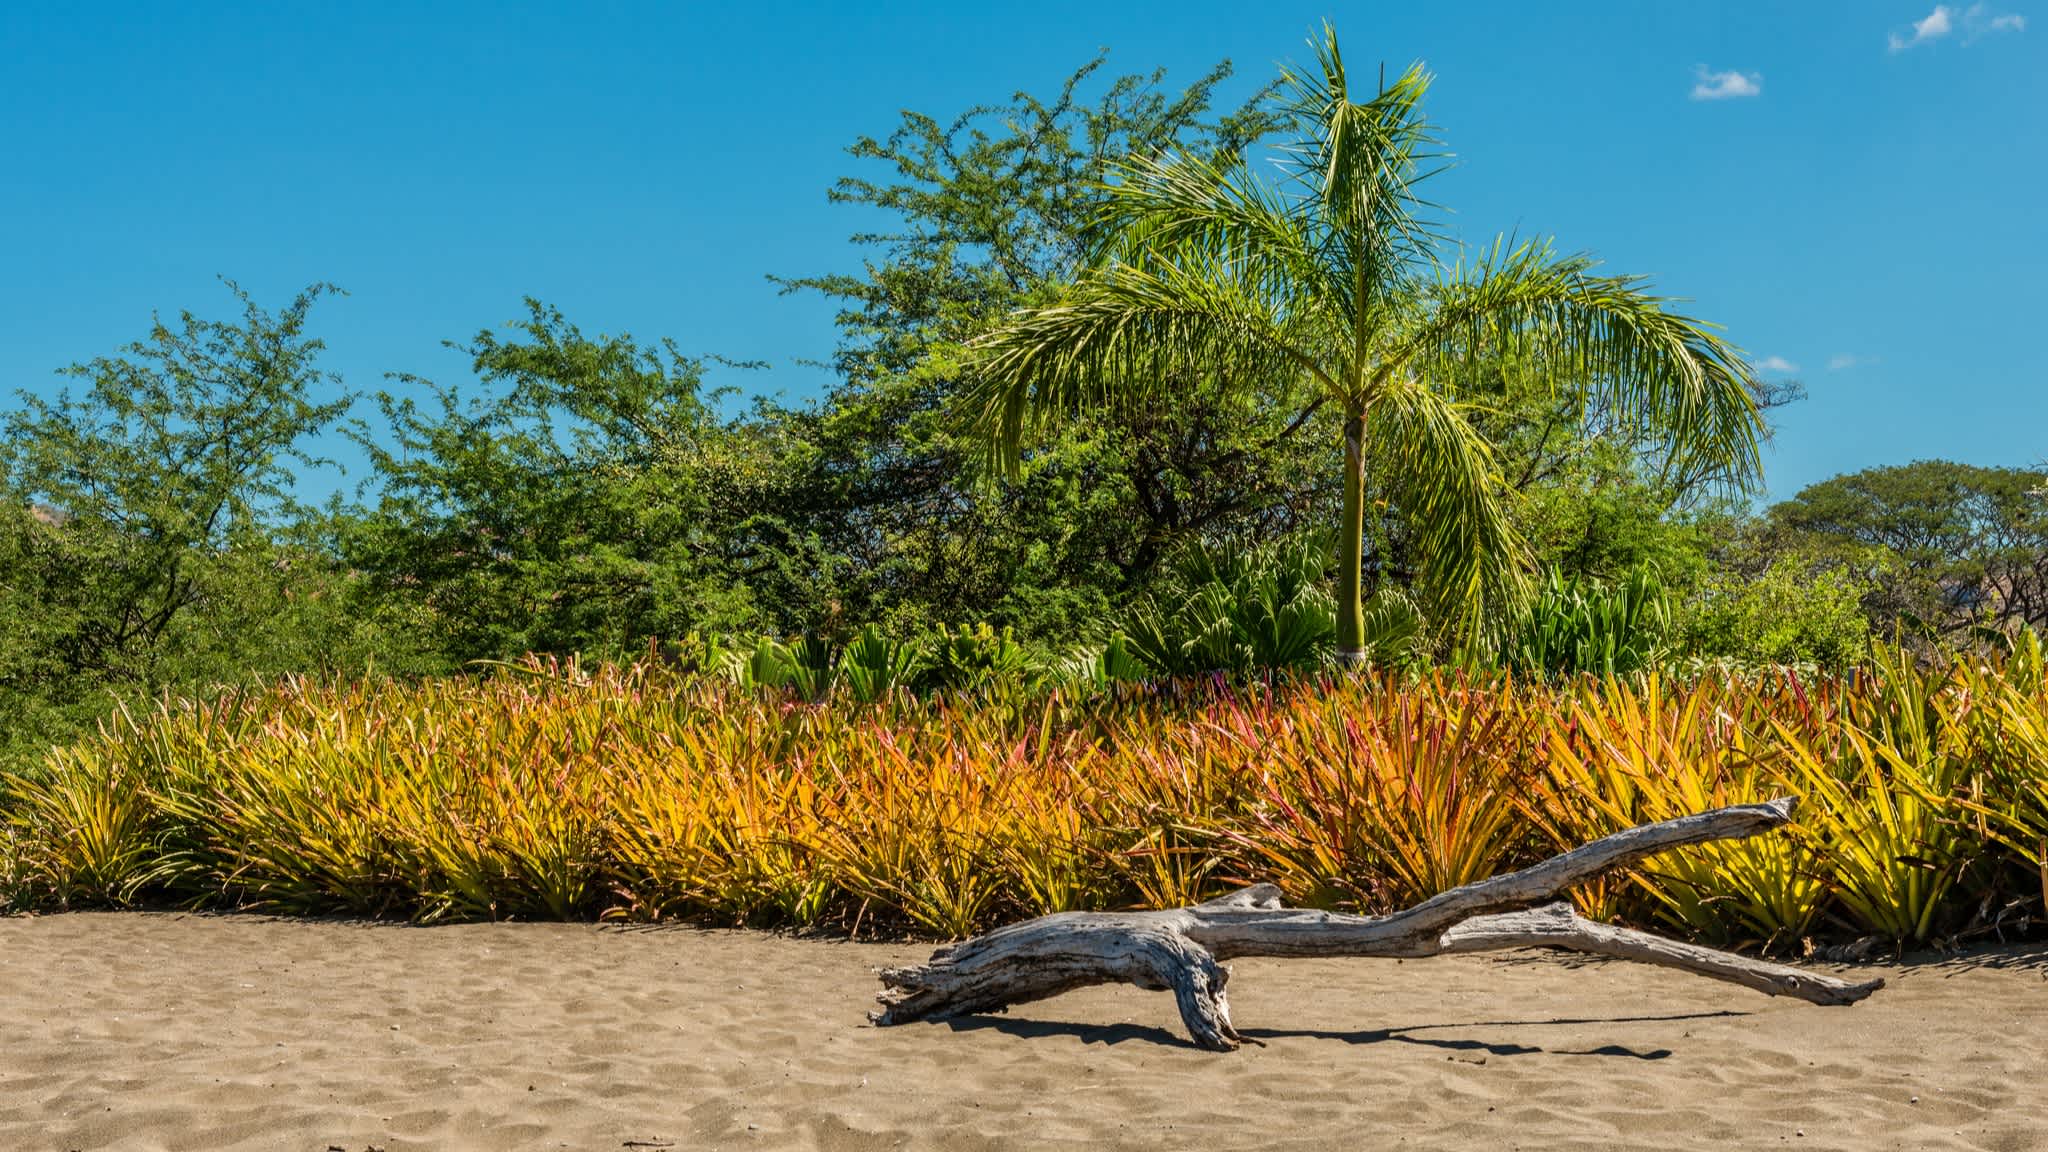 Der Strand Playa Potrero in Costa Rica mit bunter Vegetation, Bäumen und blauem Himmel.